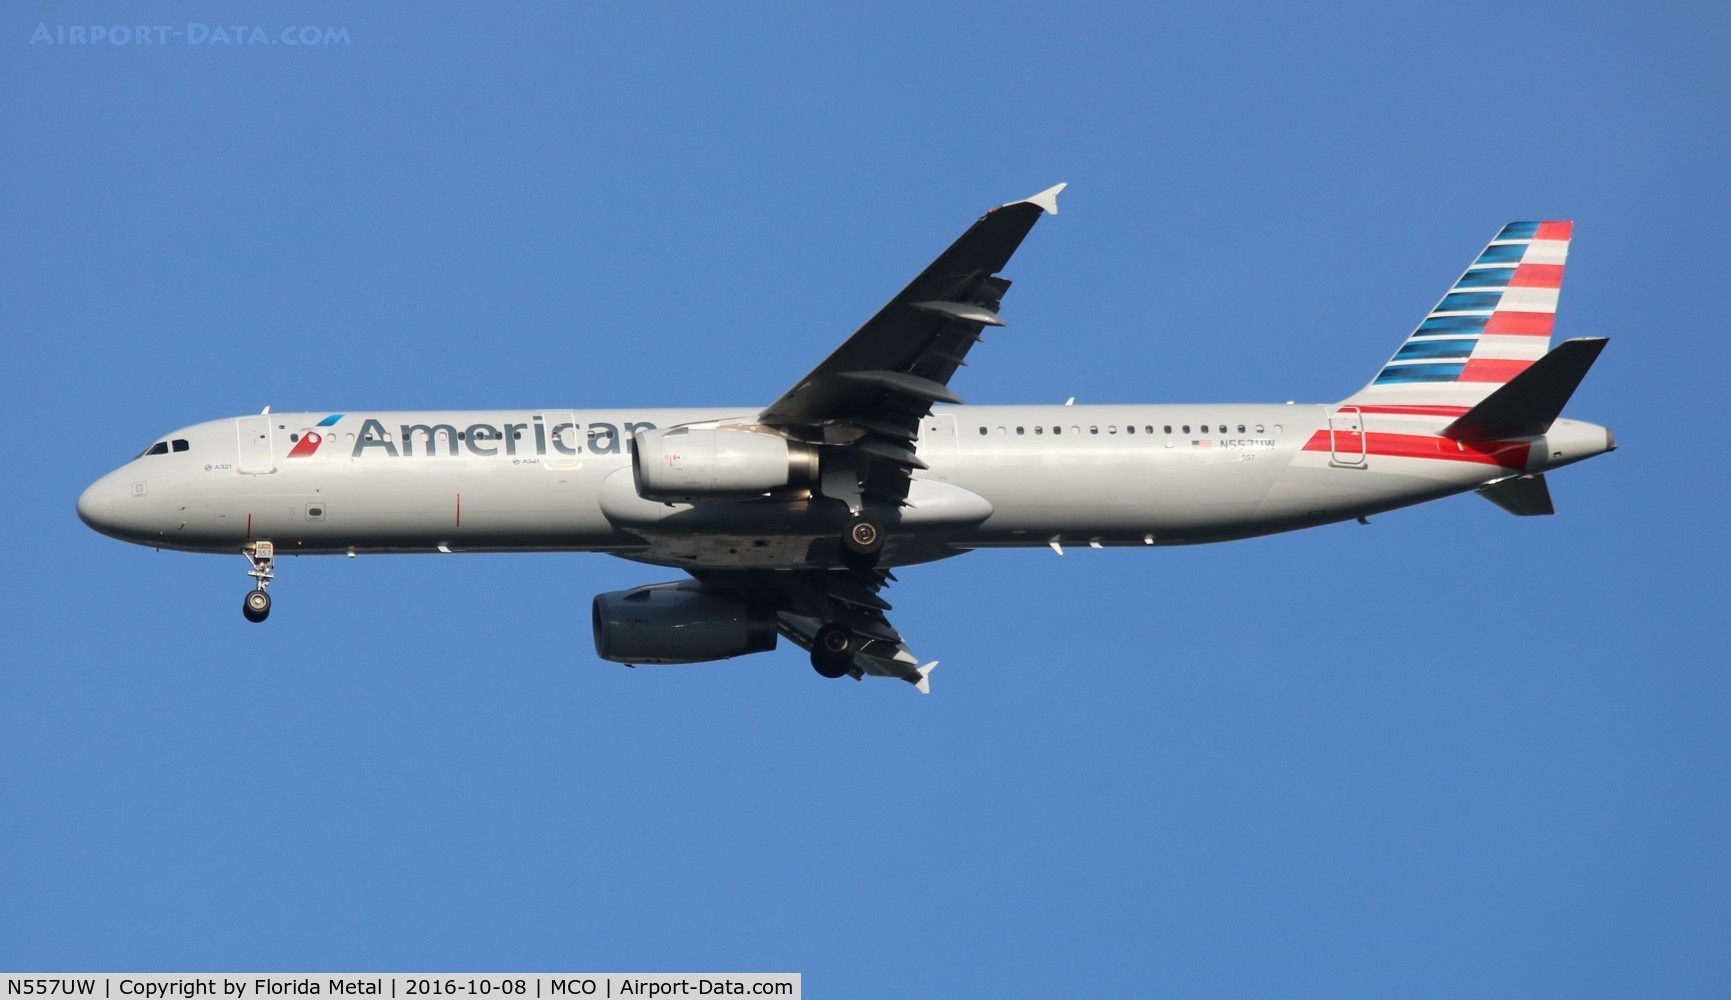 N557UW, 2012 Airbus A321-231 C/N 5269, American